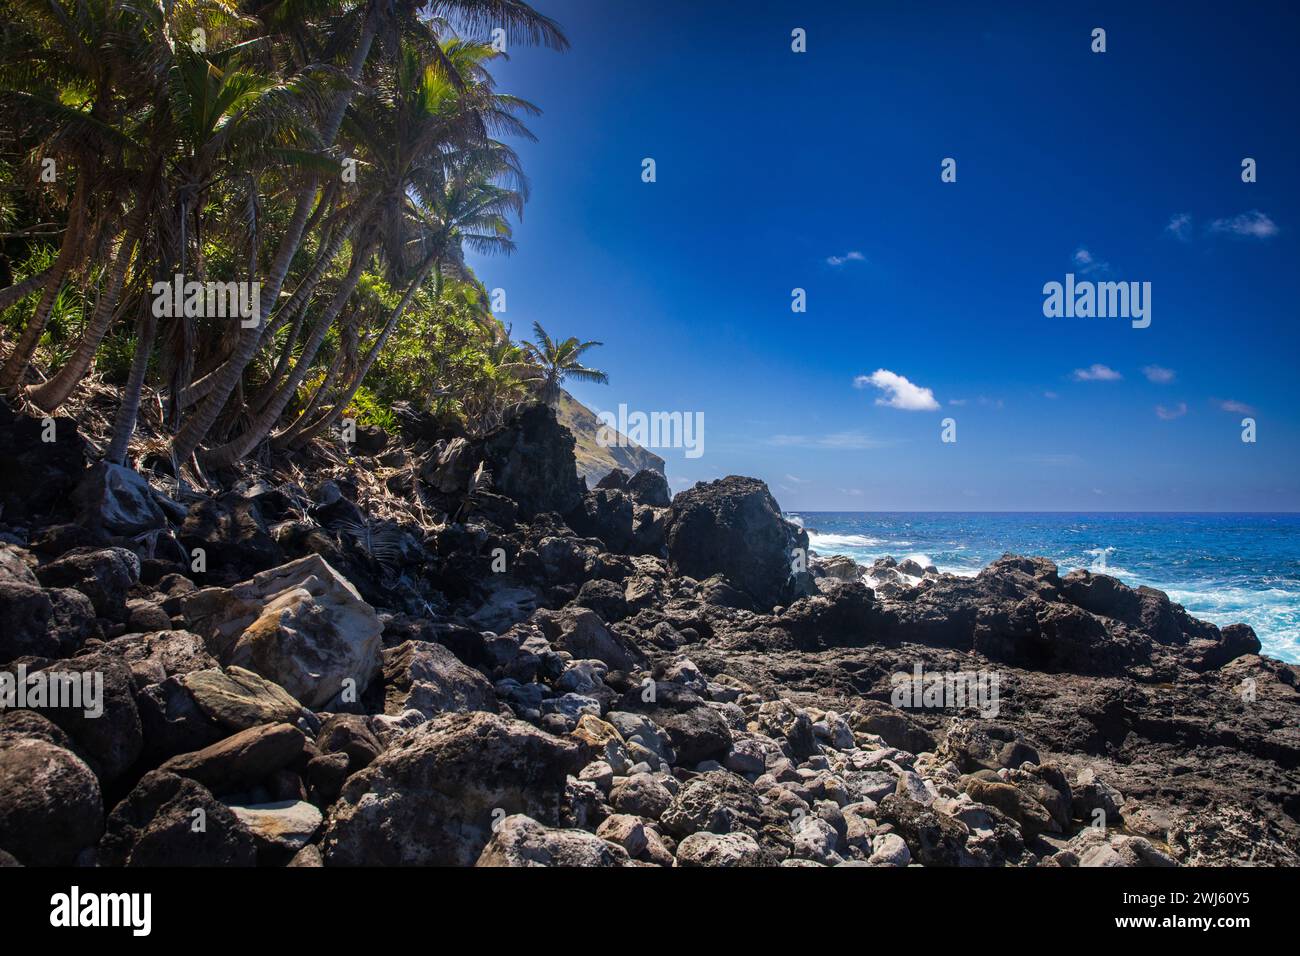 Le rivage volcanique rocheux typique de Pitcairn Island dans l'océan Pacifique Sud Banque D'Images